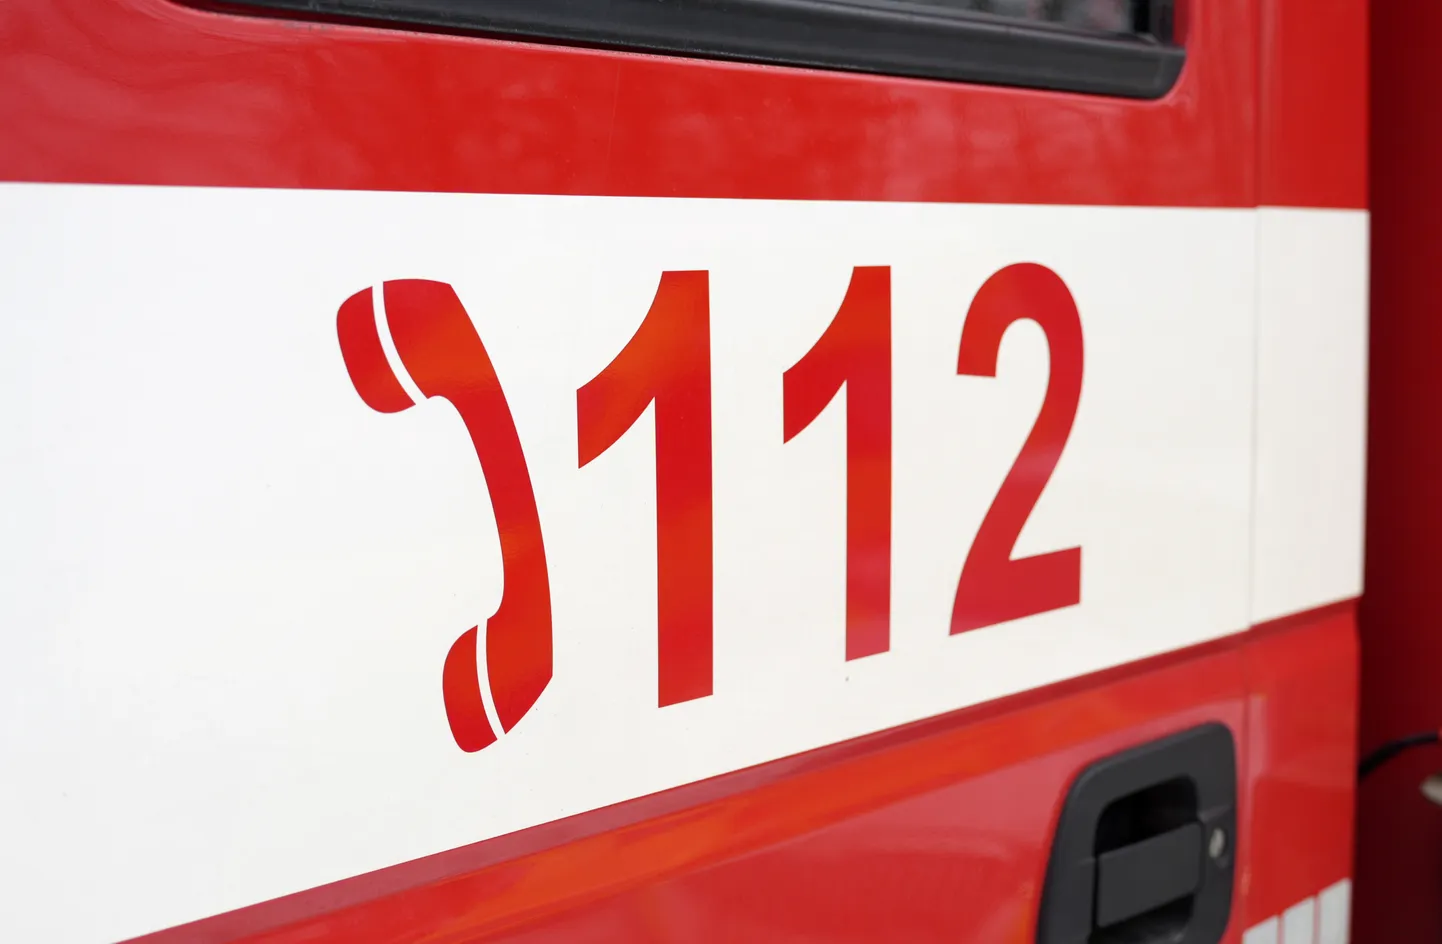 Vienotais ārkārtas palīdzības izsaukumu numurs "112" uz Valsts ugunsdzēsības un glābšanas dienesta automašīnas durvīm.